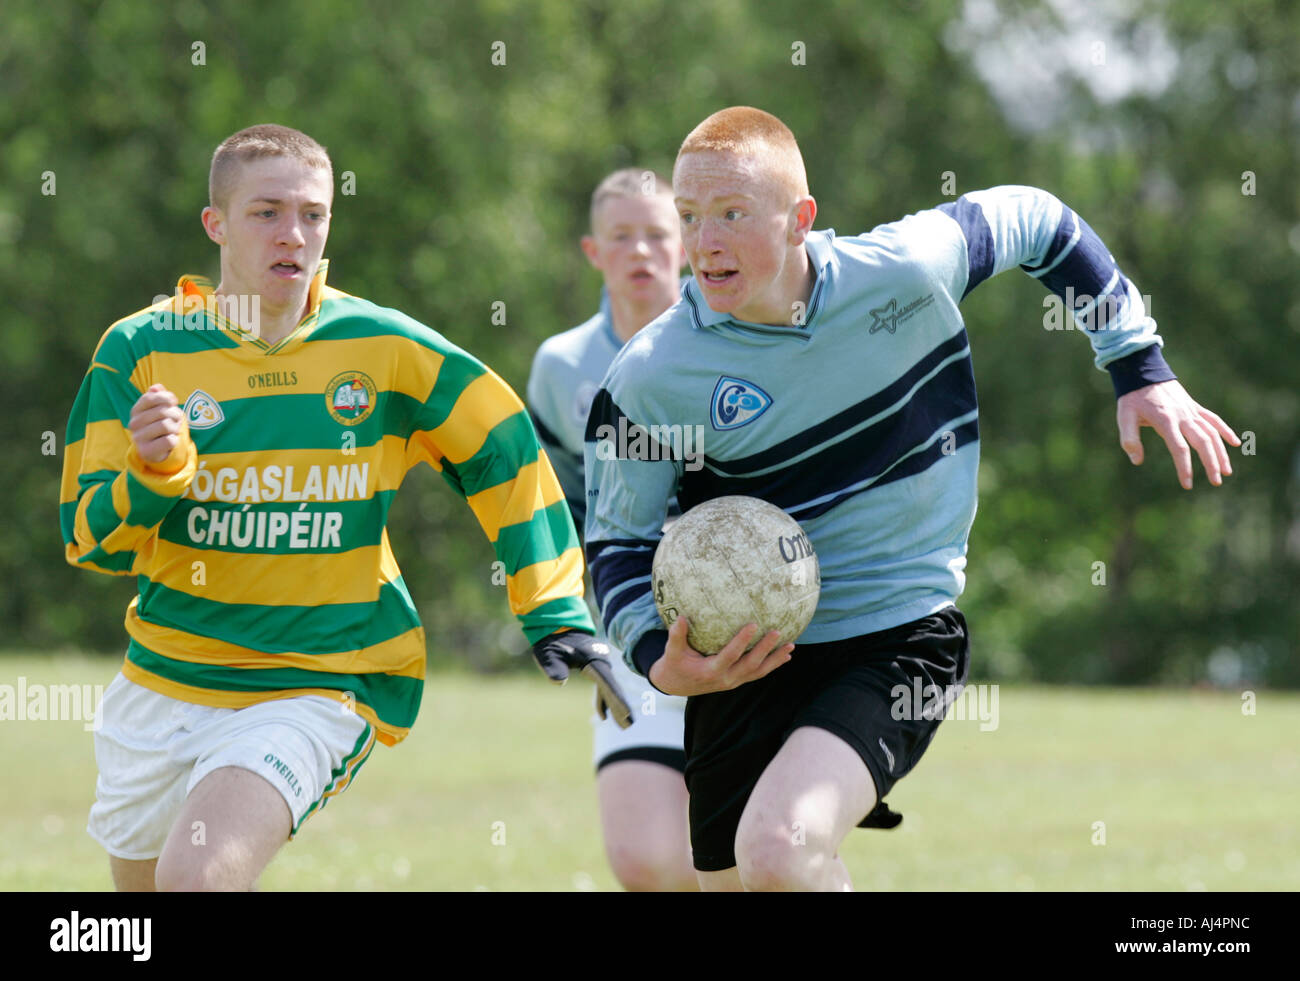 Aktion von Schuljunge Gälischer Fußballspieler läuft mit dem Ball wird weiter verfolgt-Belfast-County Antrim-Nordirland Stockfoto